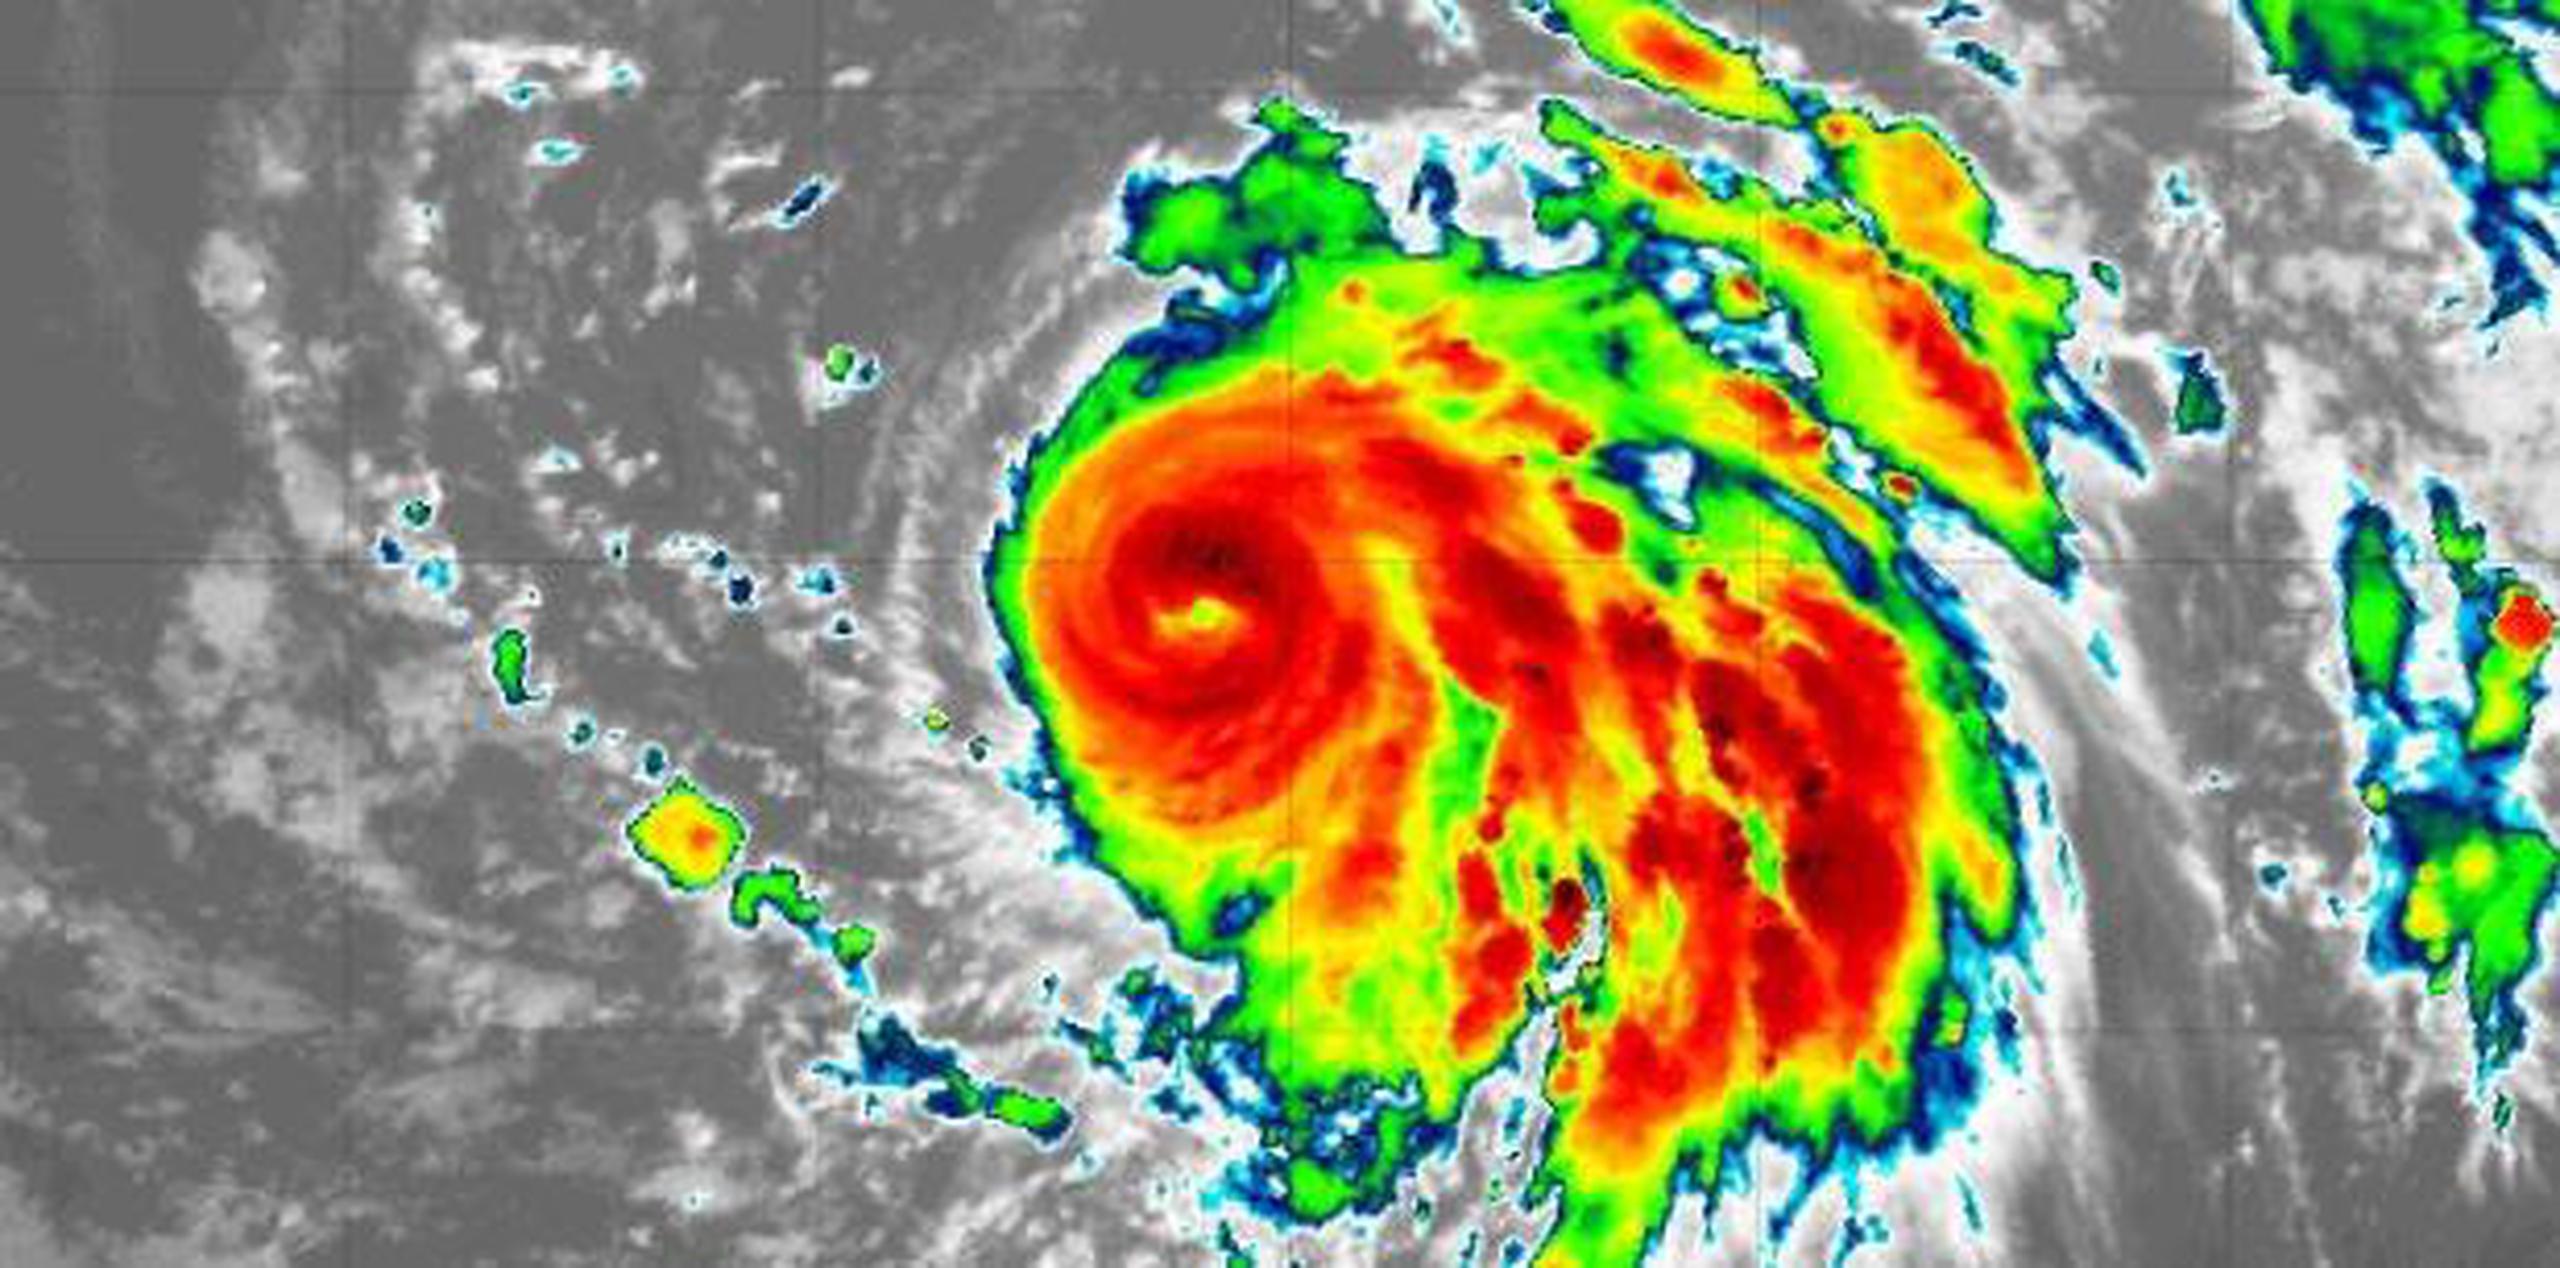 Oscar es el octavo huracán de la temporada de seis meses en el Atlántico que termina el 30 de noviembre. (NOAA)